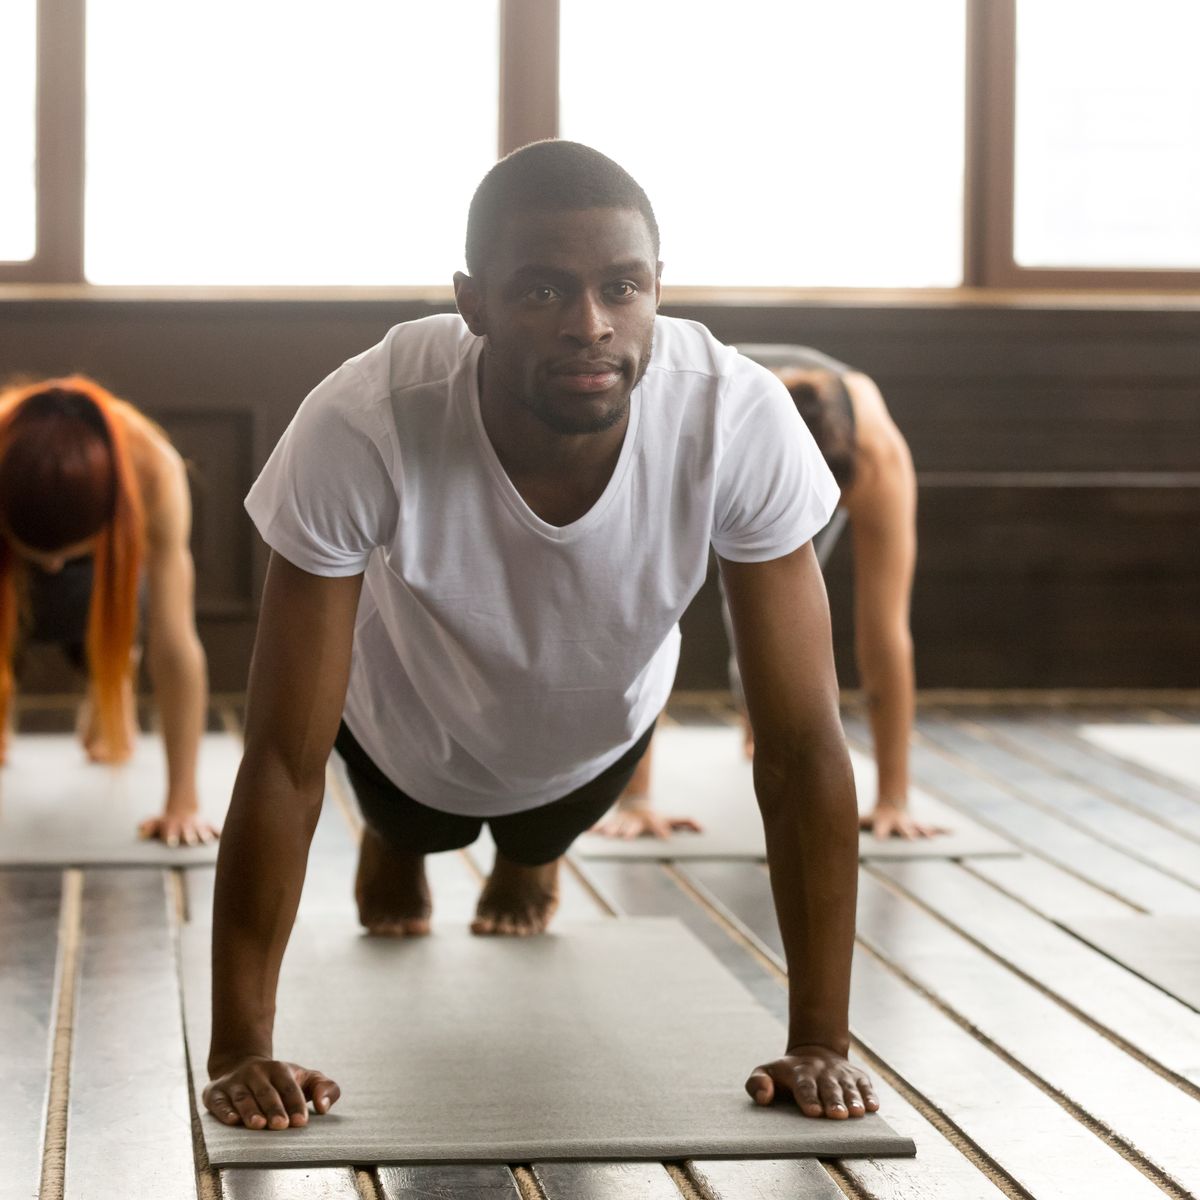 Barry Beloved matron Yoga Poses for Men - Best Yoga Workout Moves for Men